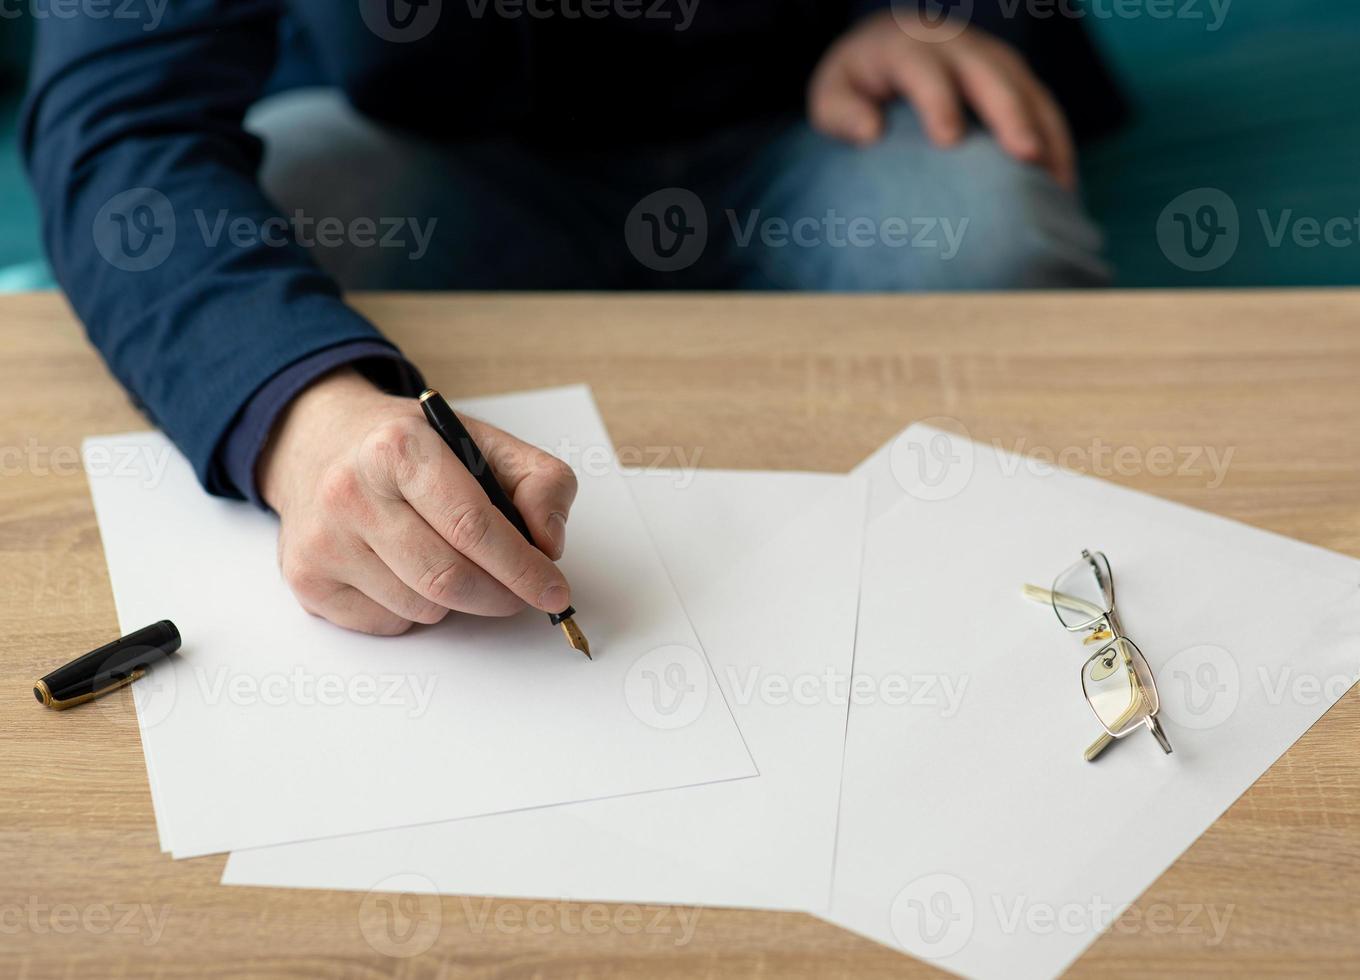 zakenman op kantoor schrijft een brief of ondertekent een document op een stuk wit papier met een vulpen met penpunt. close-up van handen van een zakenman in een pak foto